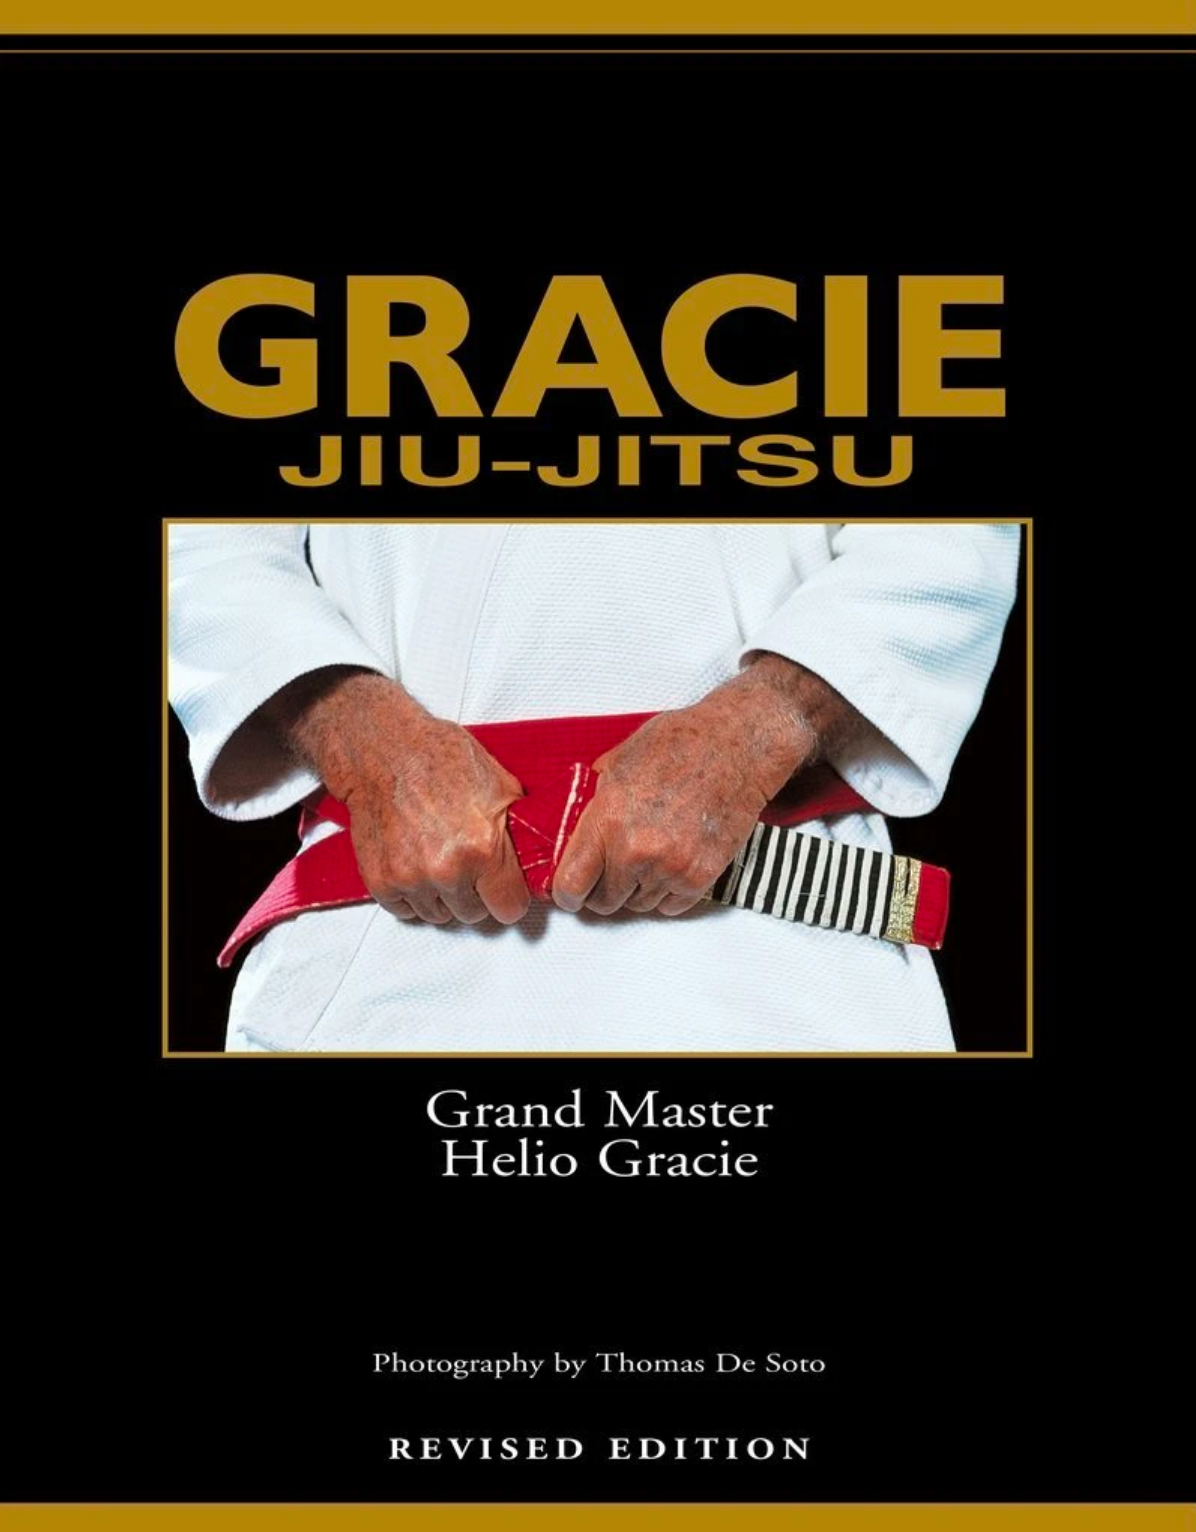 Gracie Jiu-Jitsu - The Master Text Book (Revised Edition) by Helio Gracie - Budovideos Inc